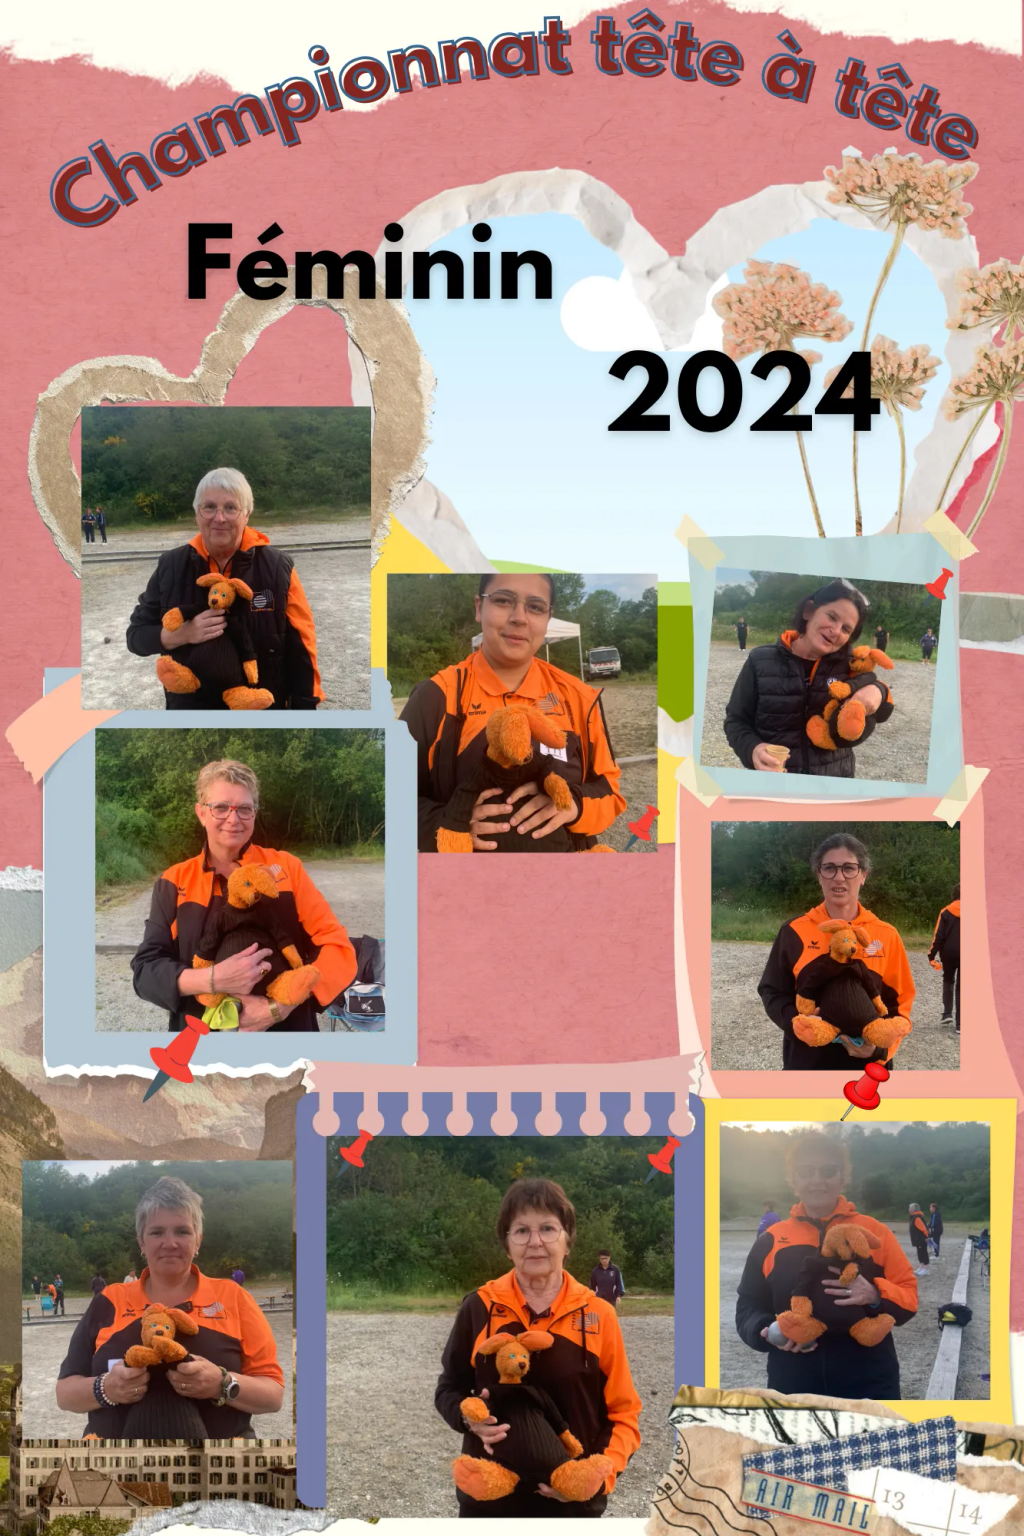  Championnat-tete-a-tete-seniors-feminin-2024